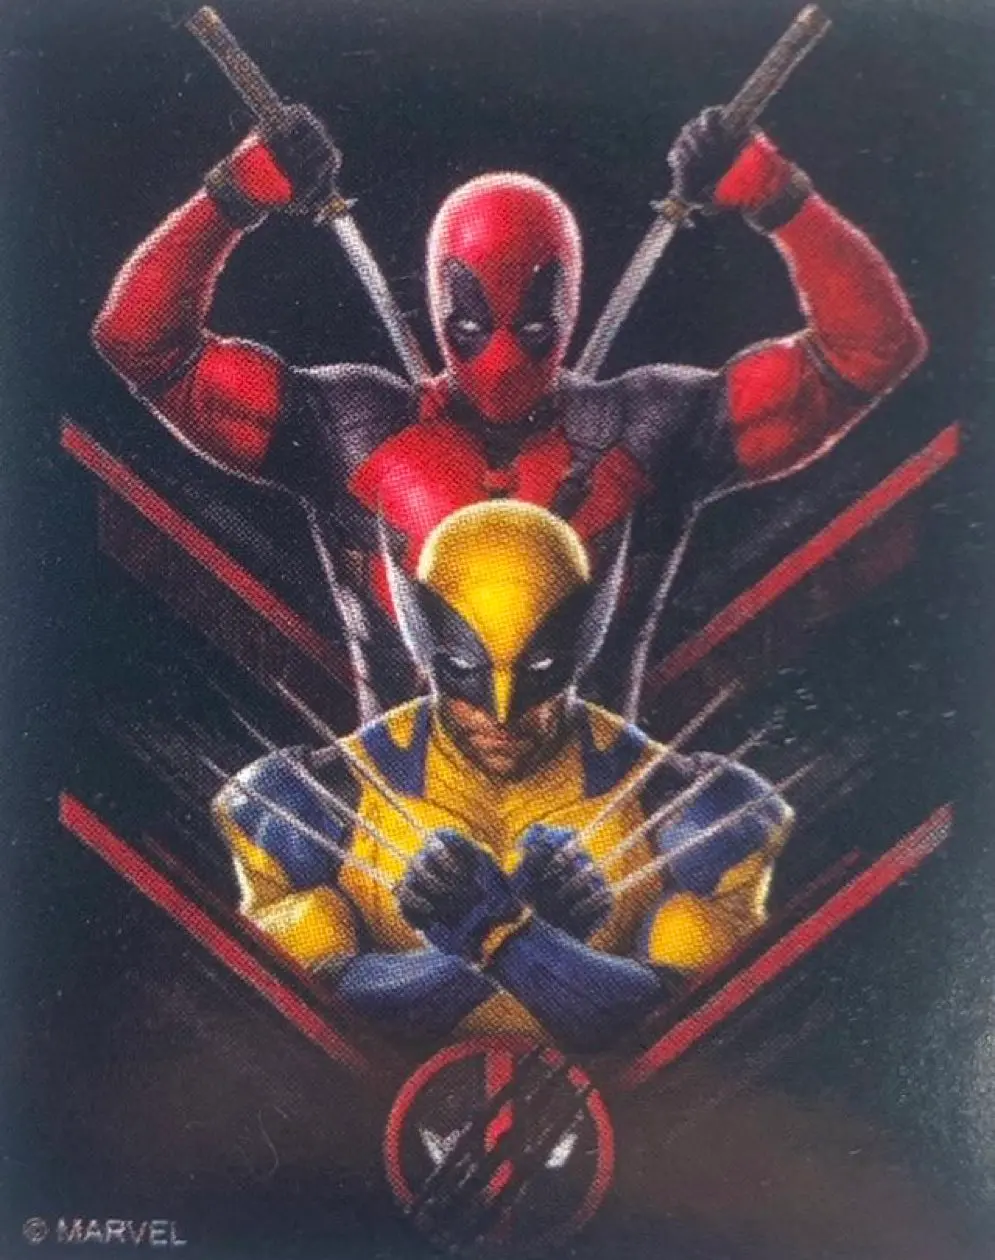 Imagem oficial de Deadpool 3 finalmente revela o Wolverine com a sua